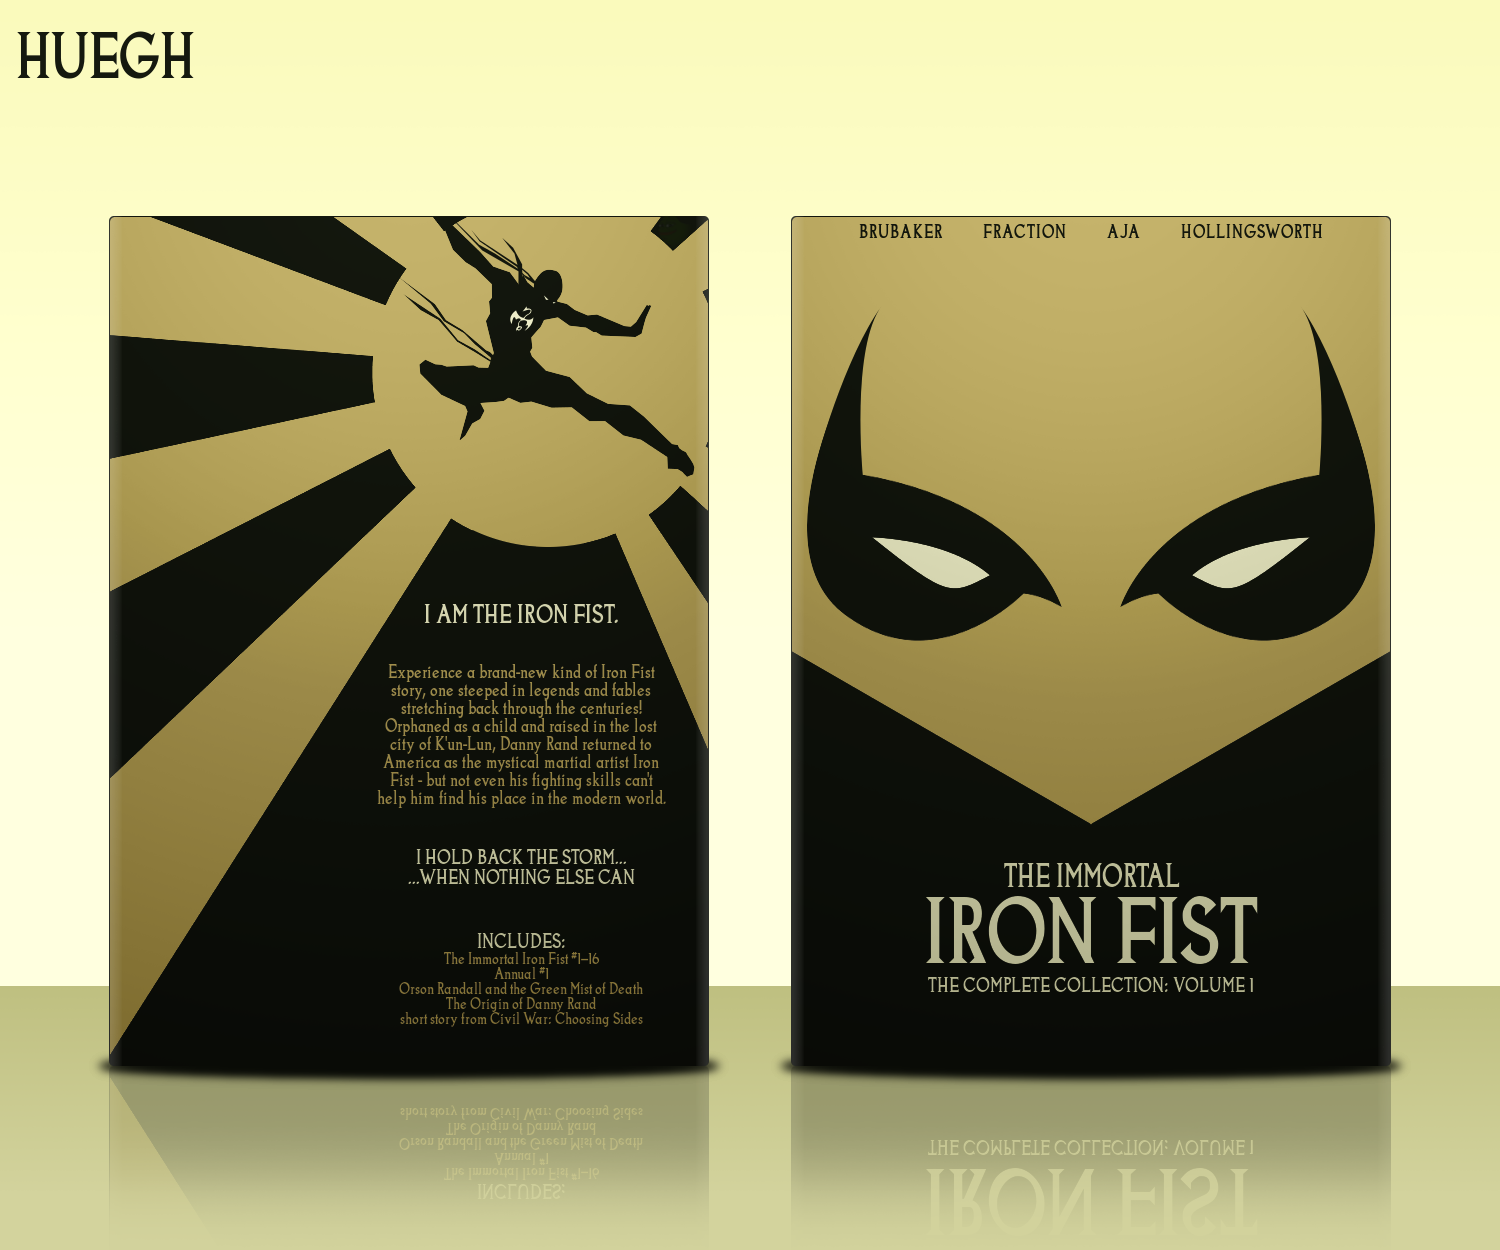 The Immortal Iron Fist: Volume 1 box cover